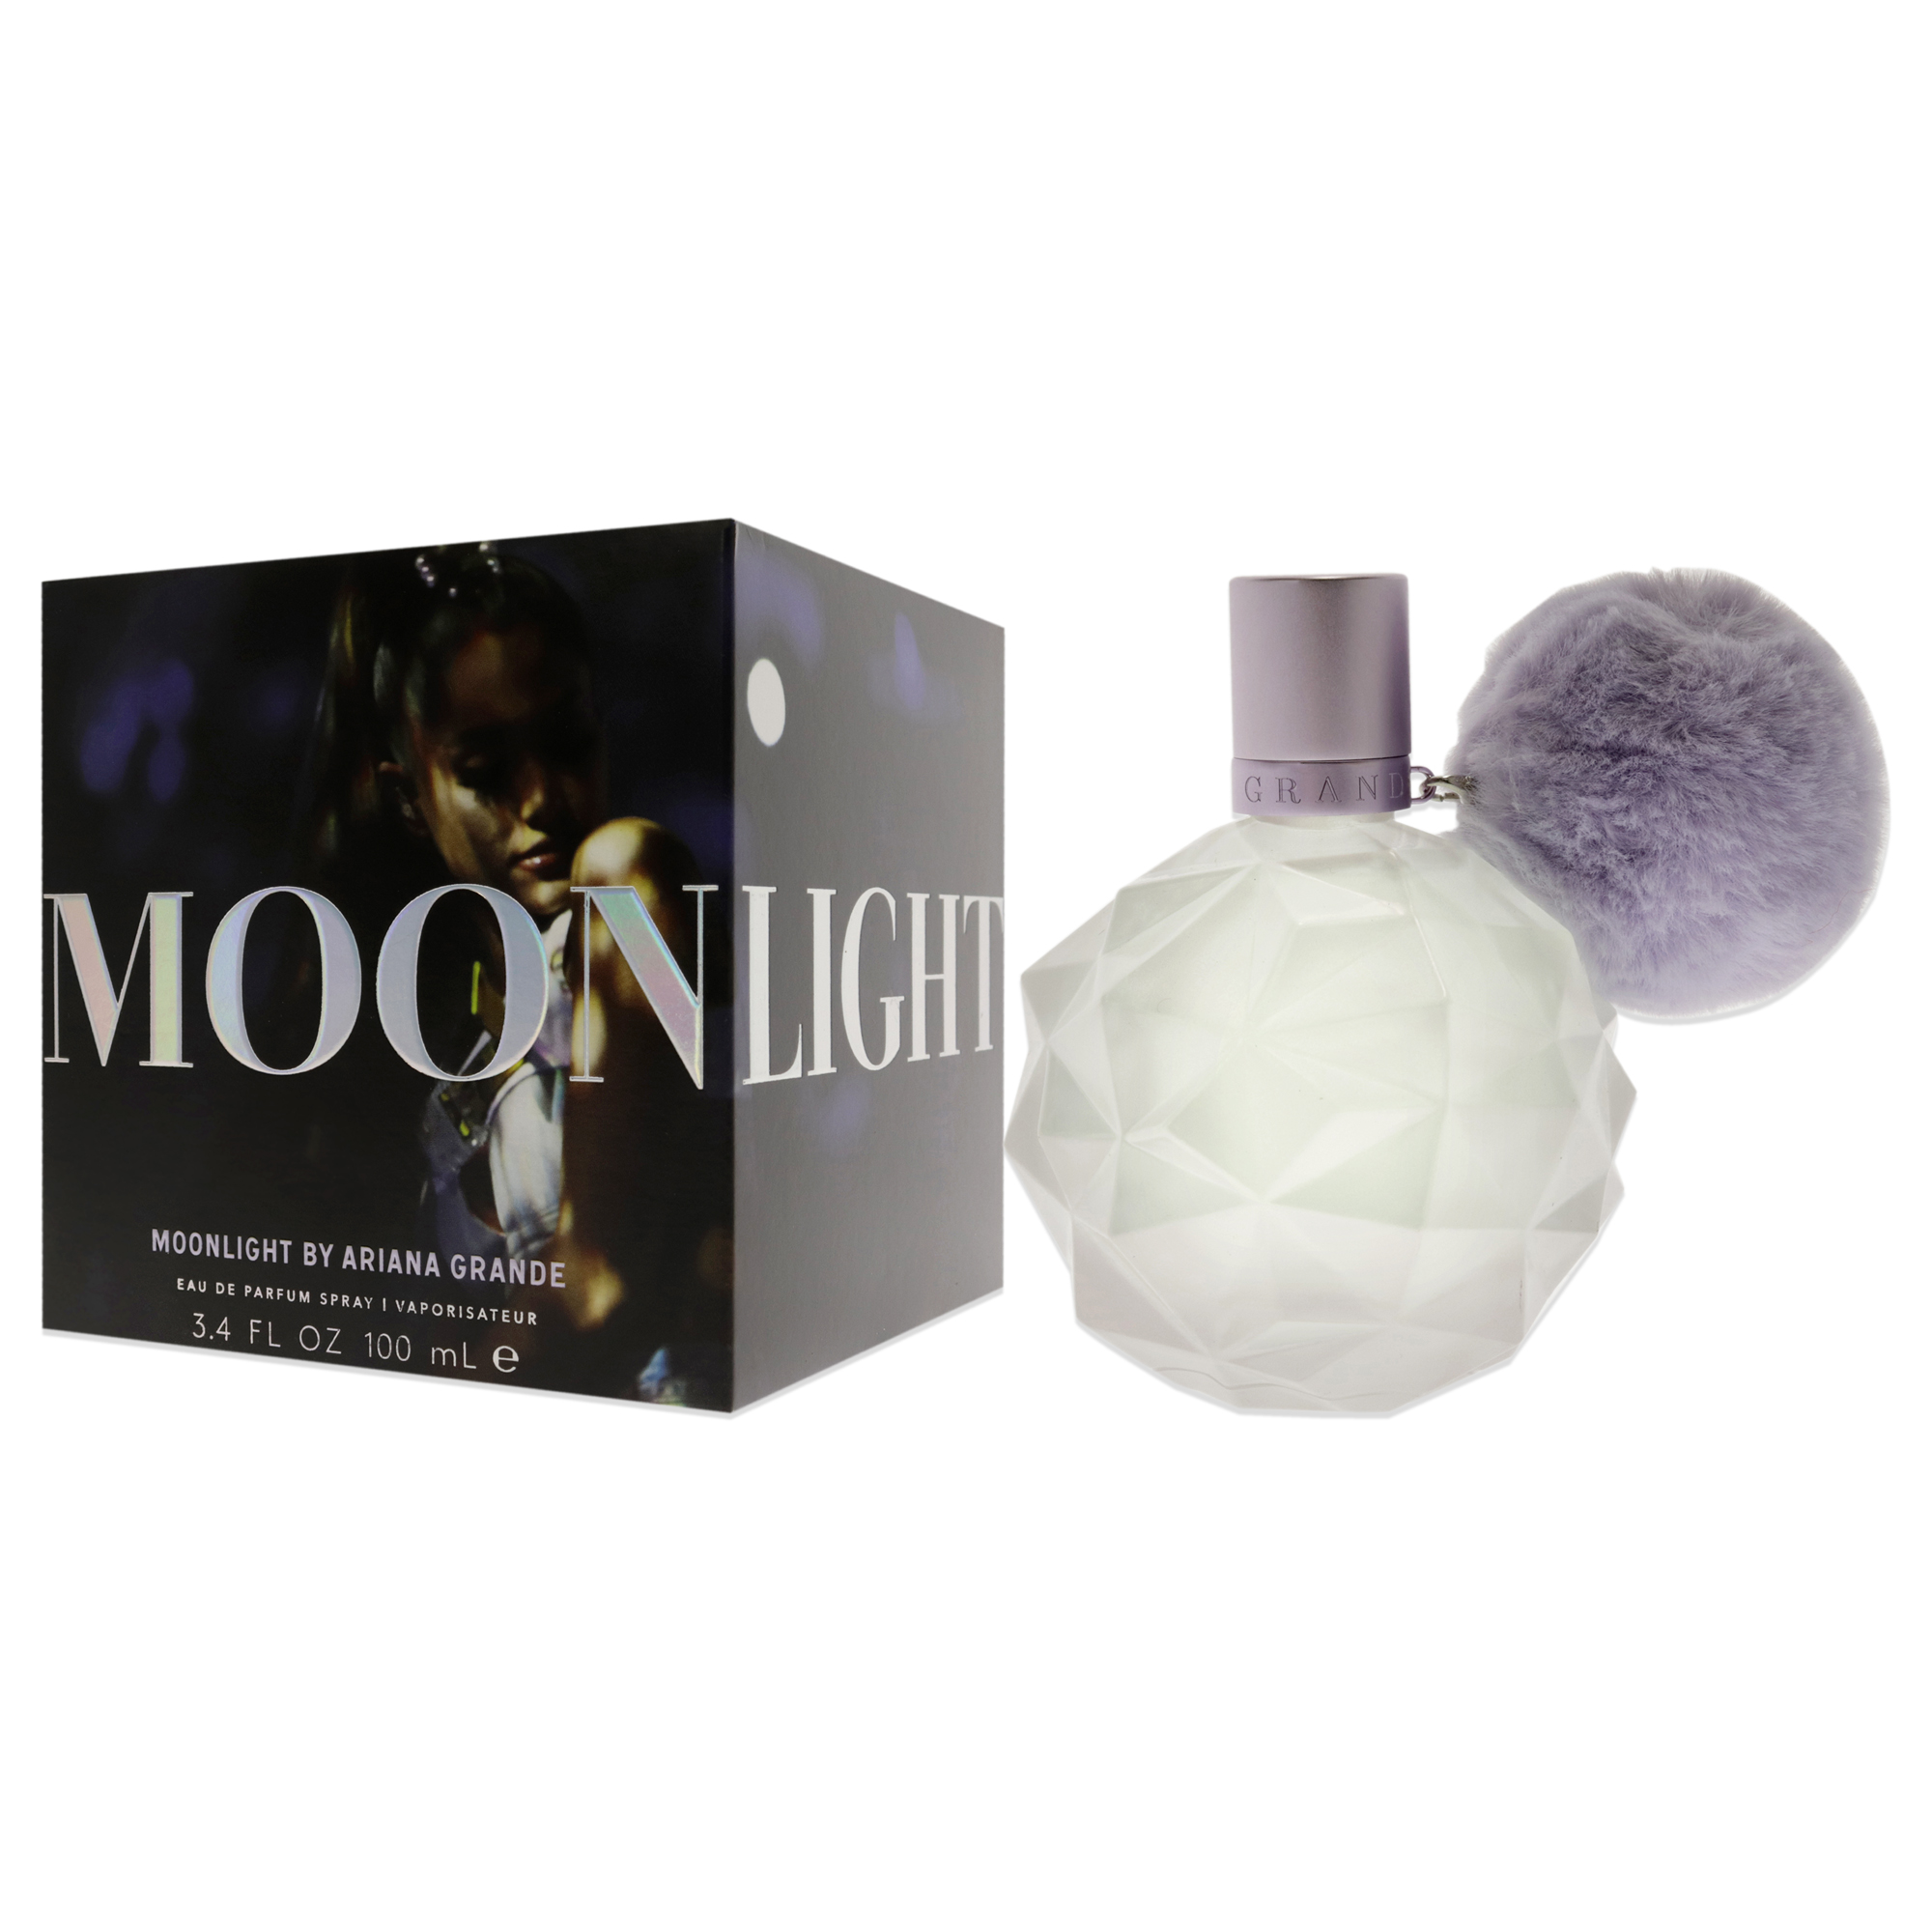 Ariana Grande Moonlight by Ariana Grande Eau De Parfum Spray 3.4 oz for Women - image 4 of 6